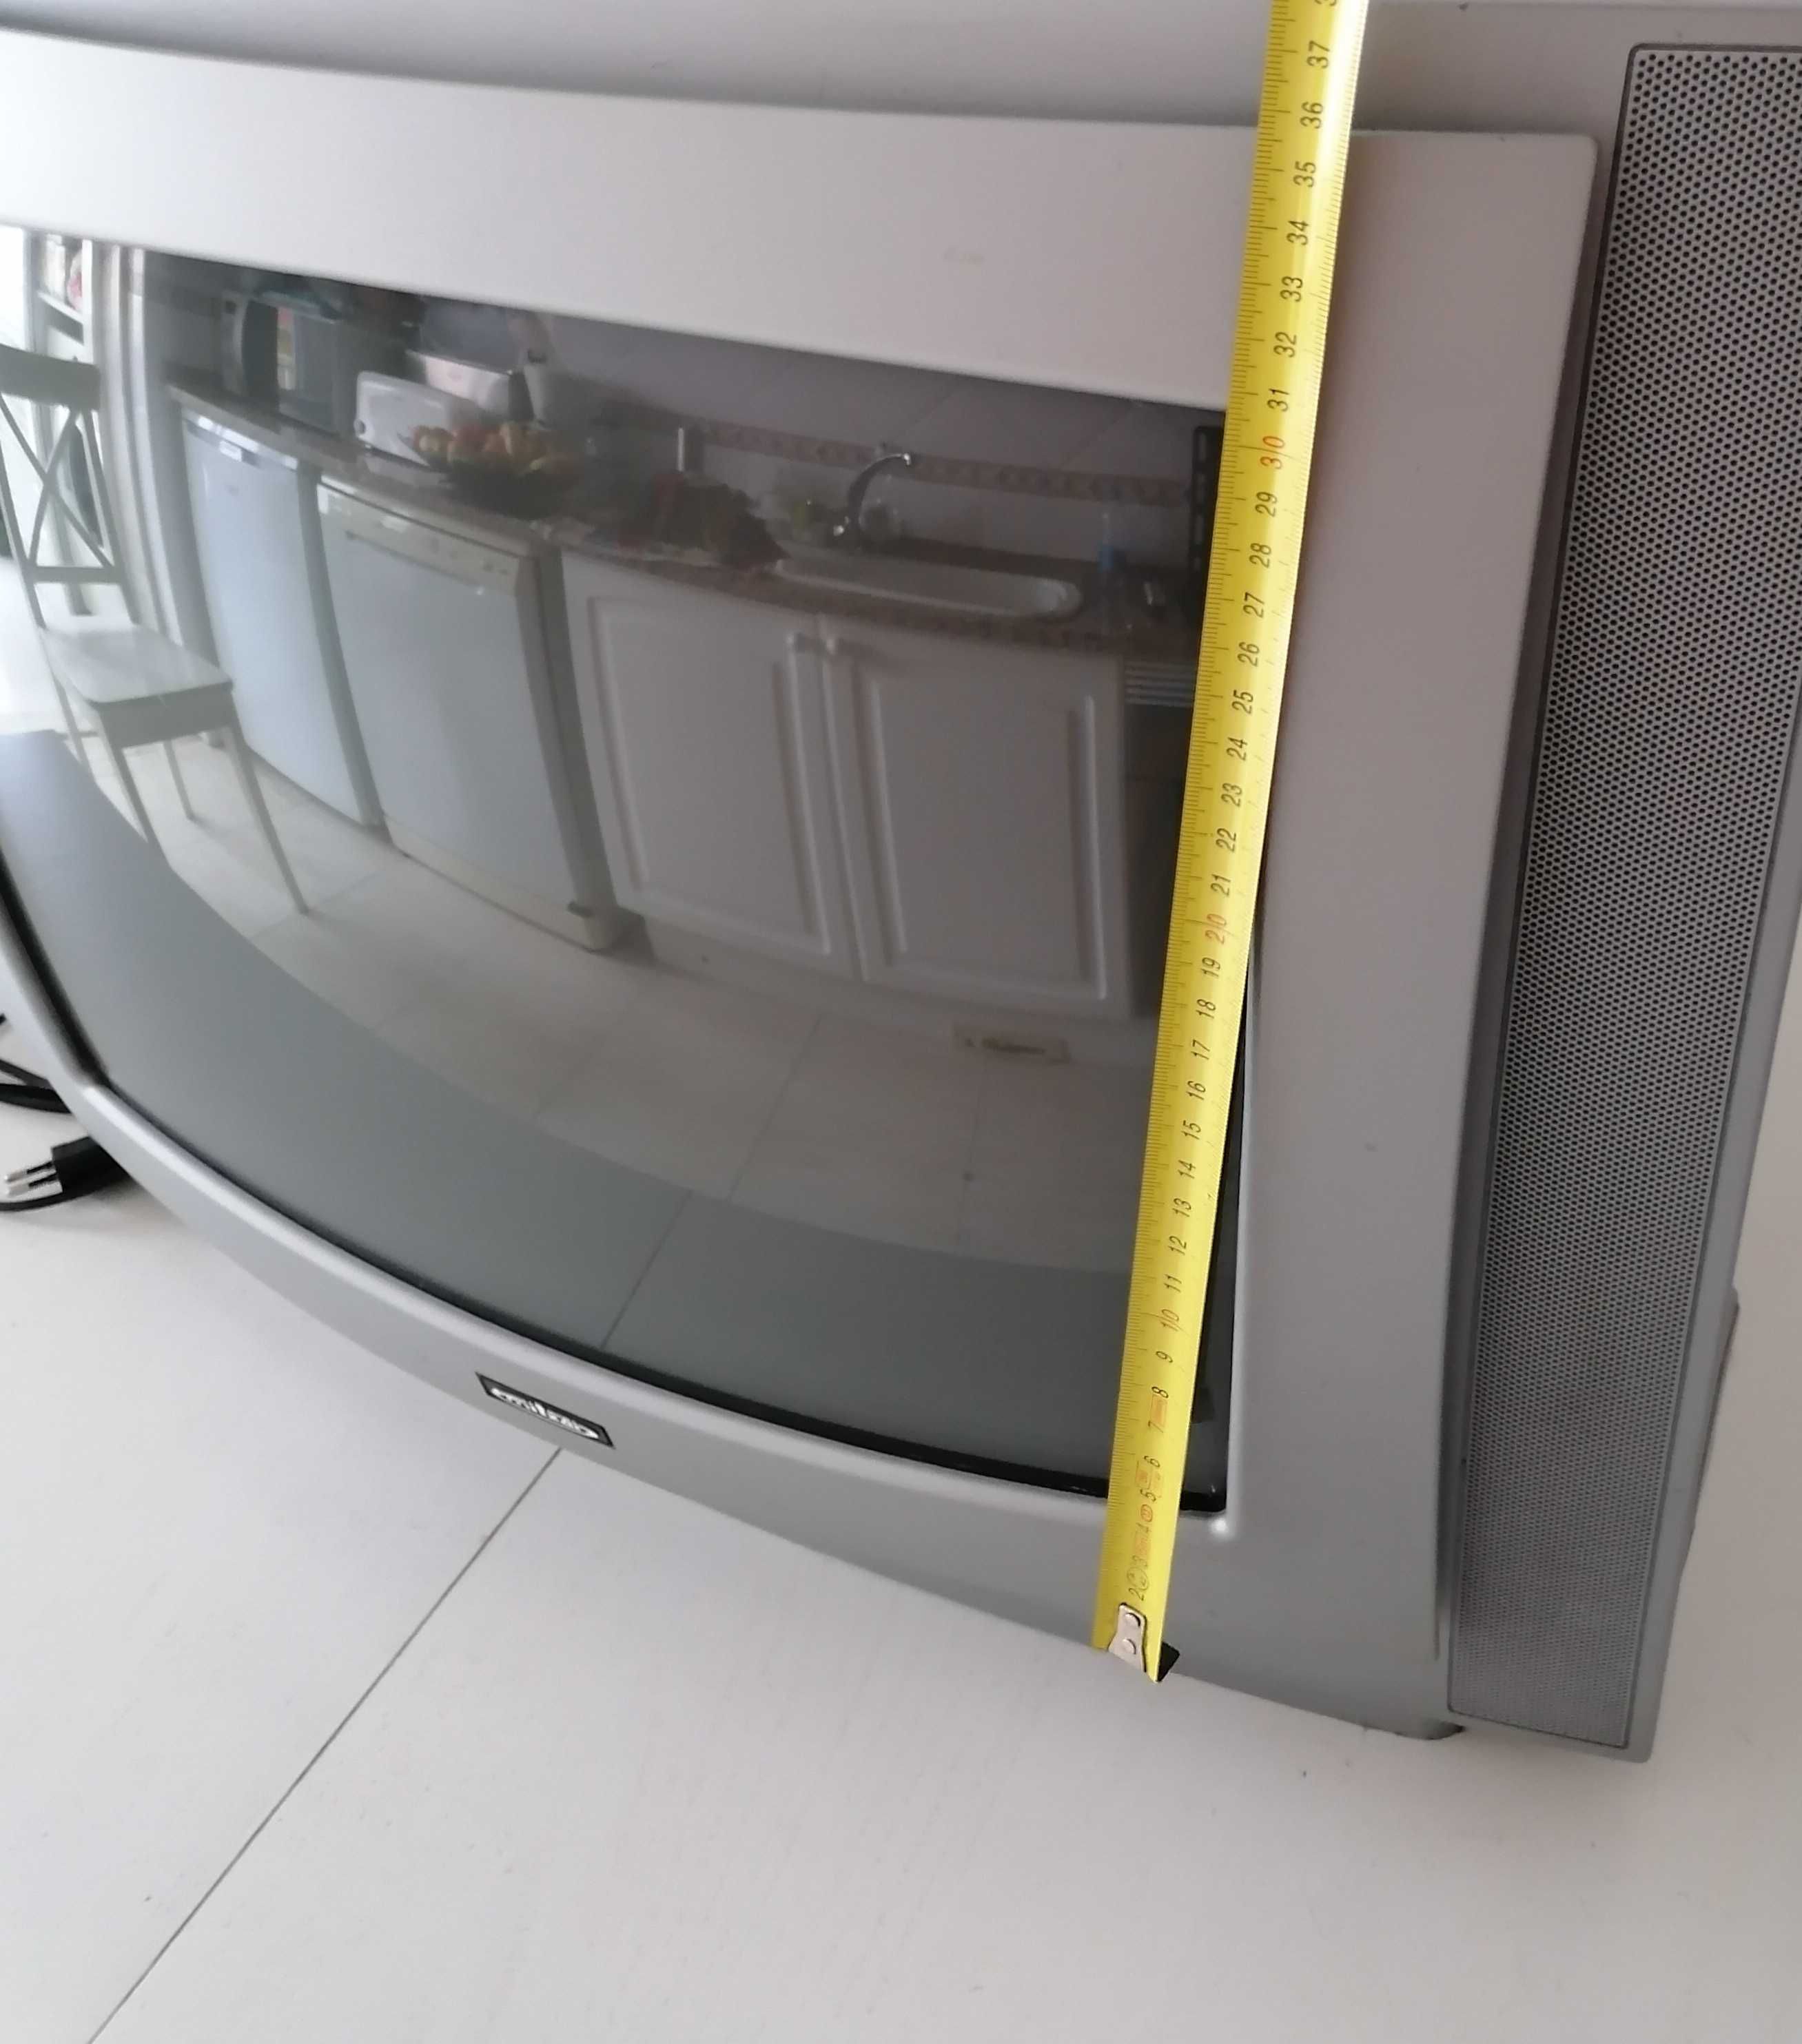 Televisão Mitsai 50 cm a cores